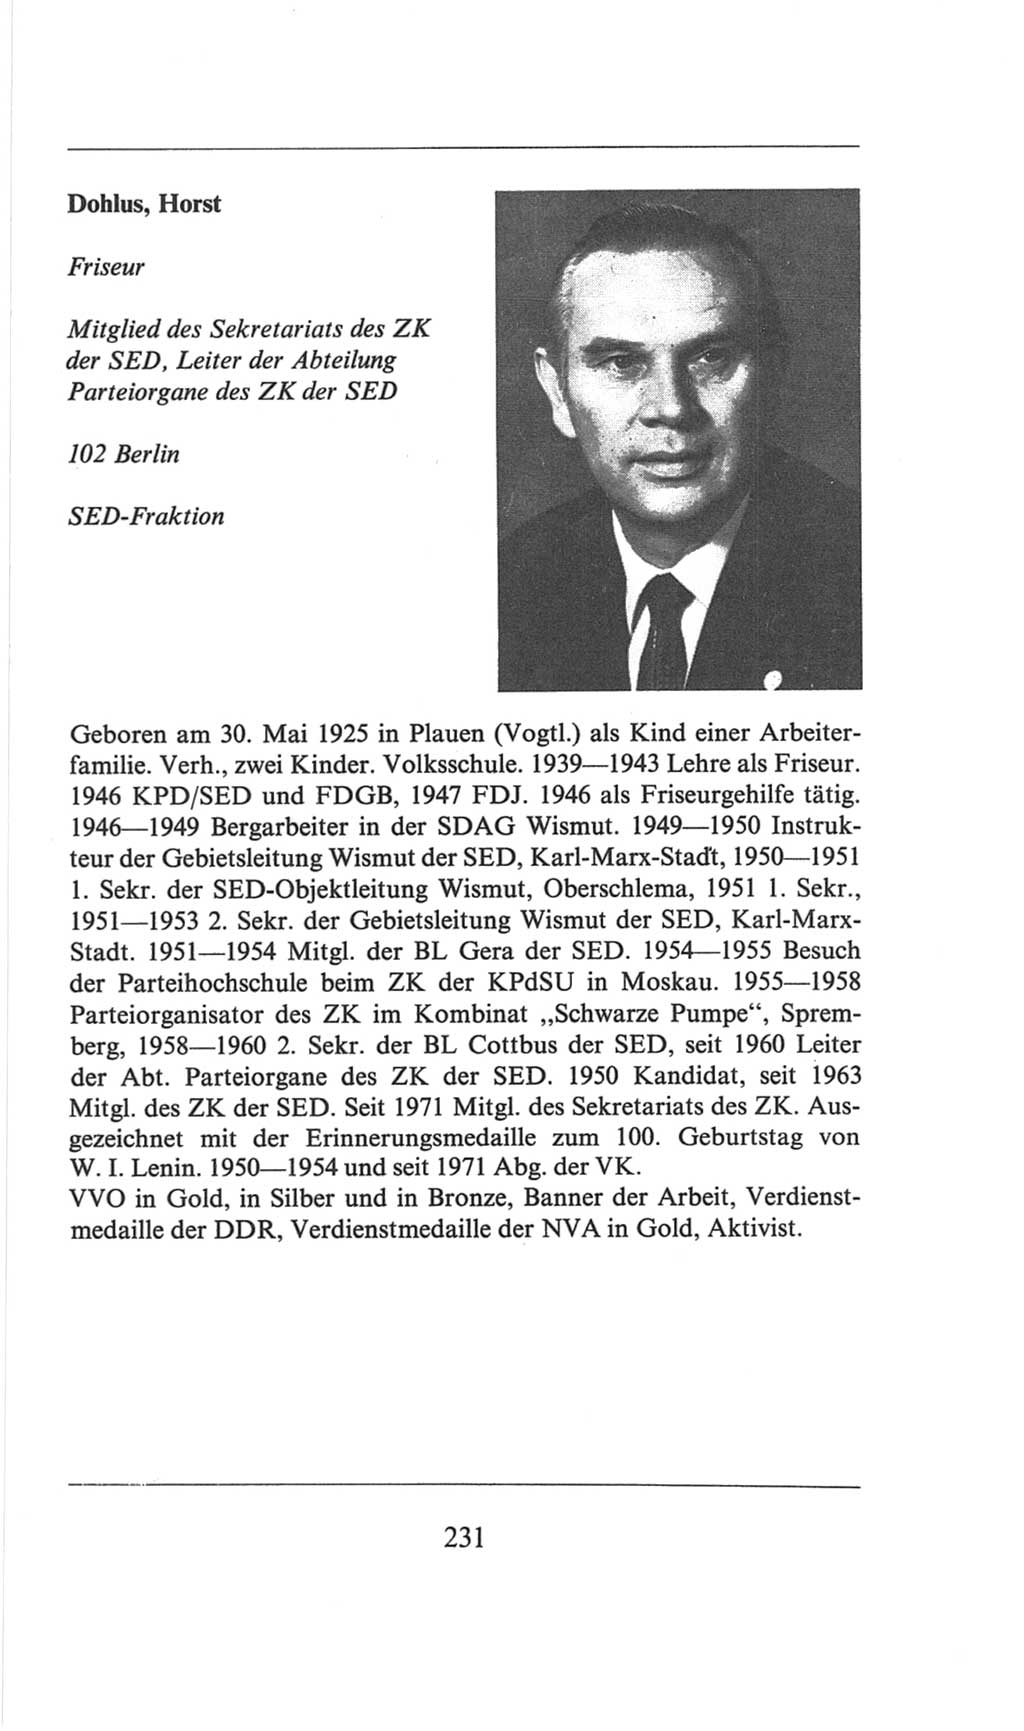 Volkskammer (VK) der Deutschen Demokratischen Republik (DDR), 6. Wahlperiode 1971-1976, Seite 231 (VK. DDR 6. WP. 1971-1976, S. 231)